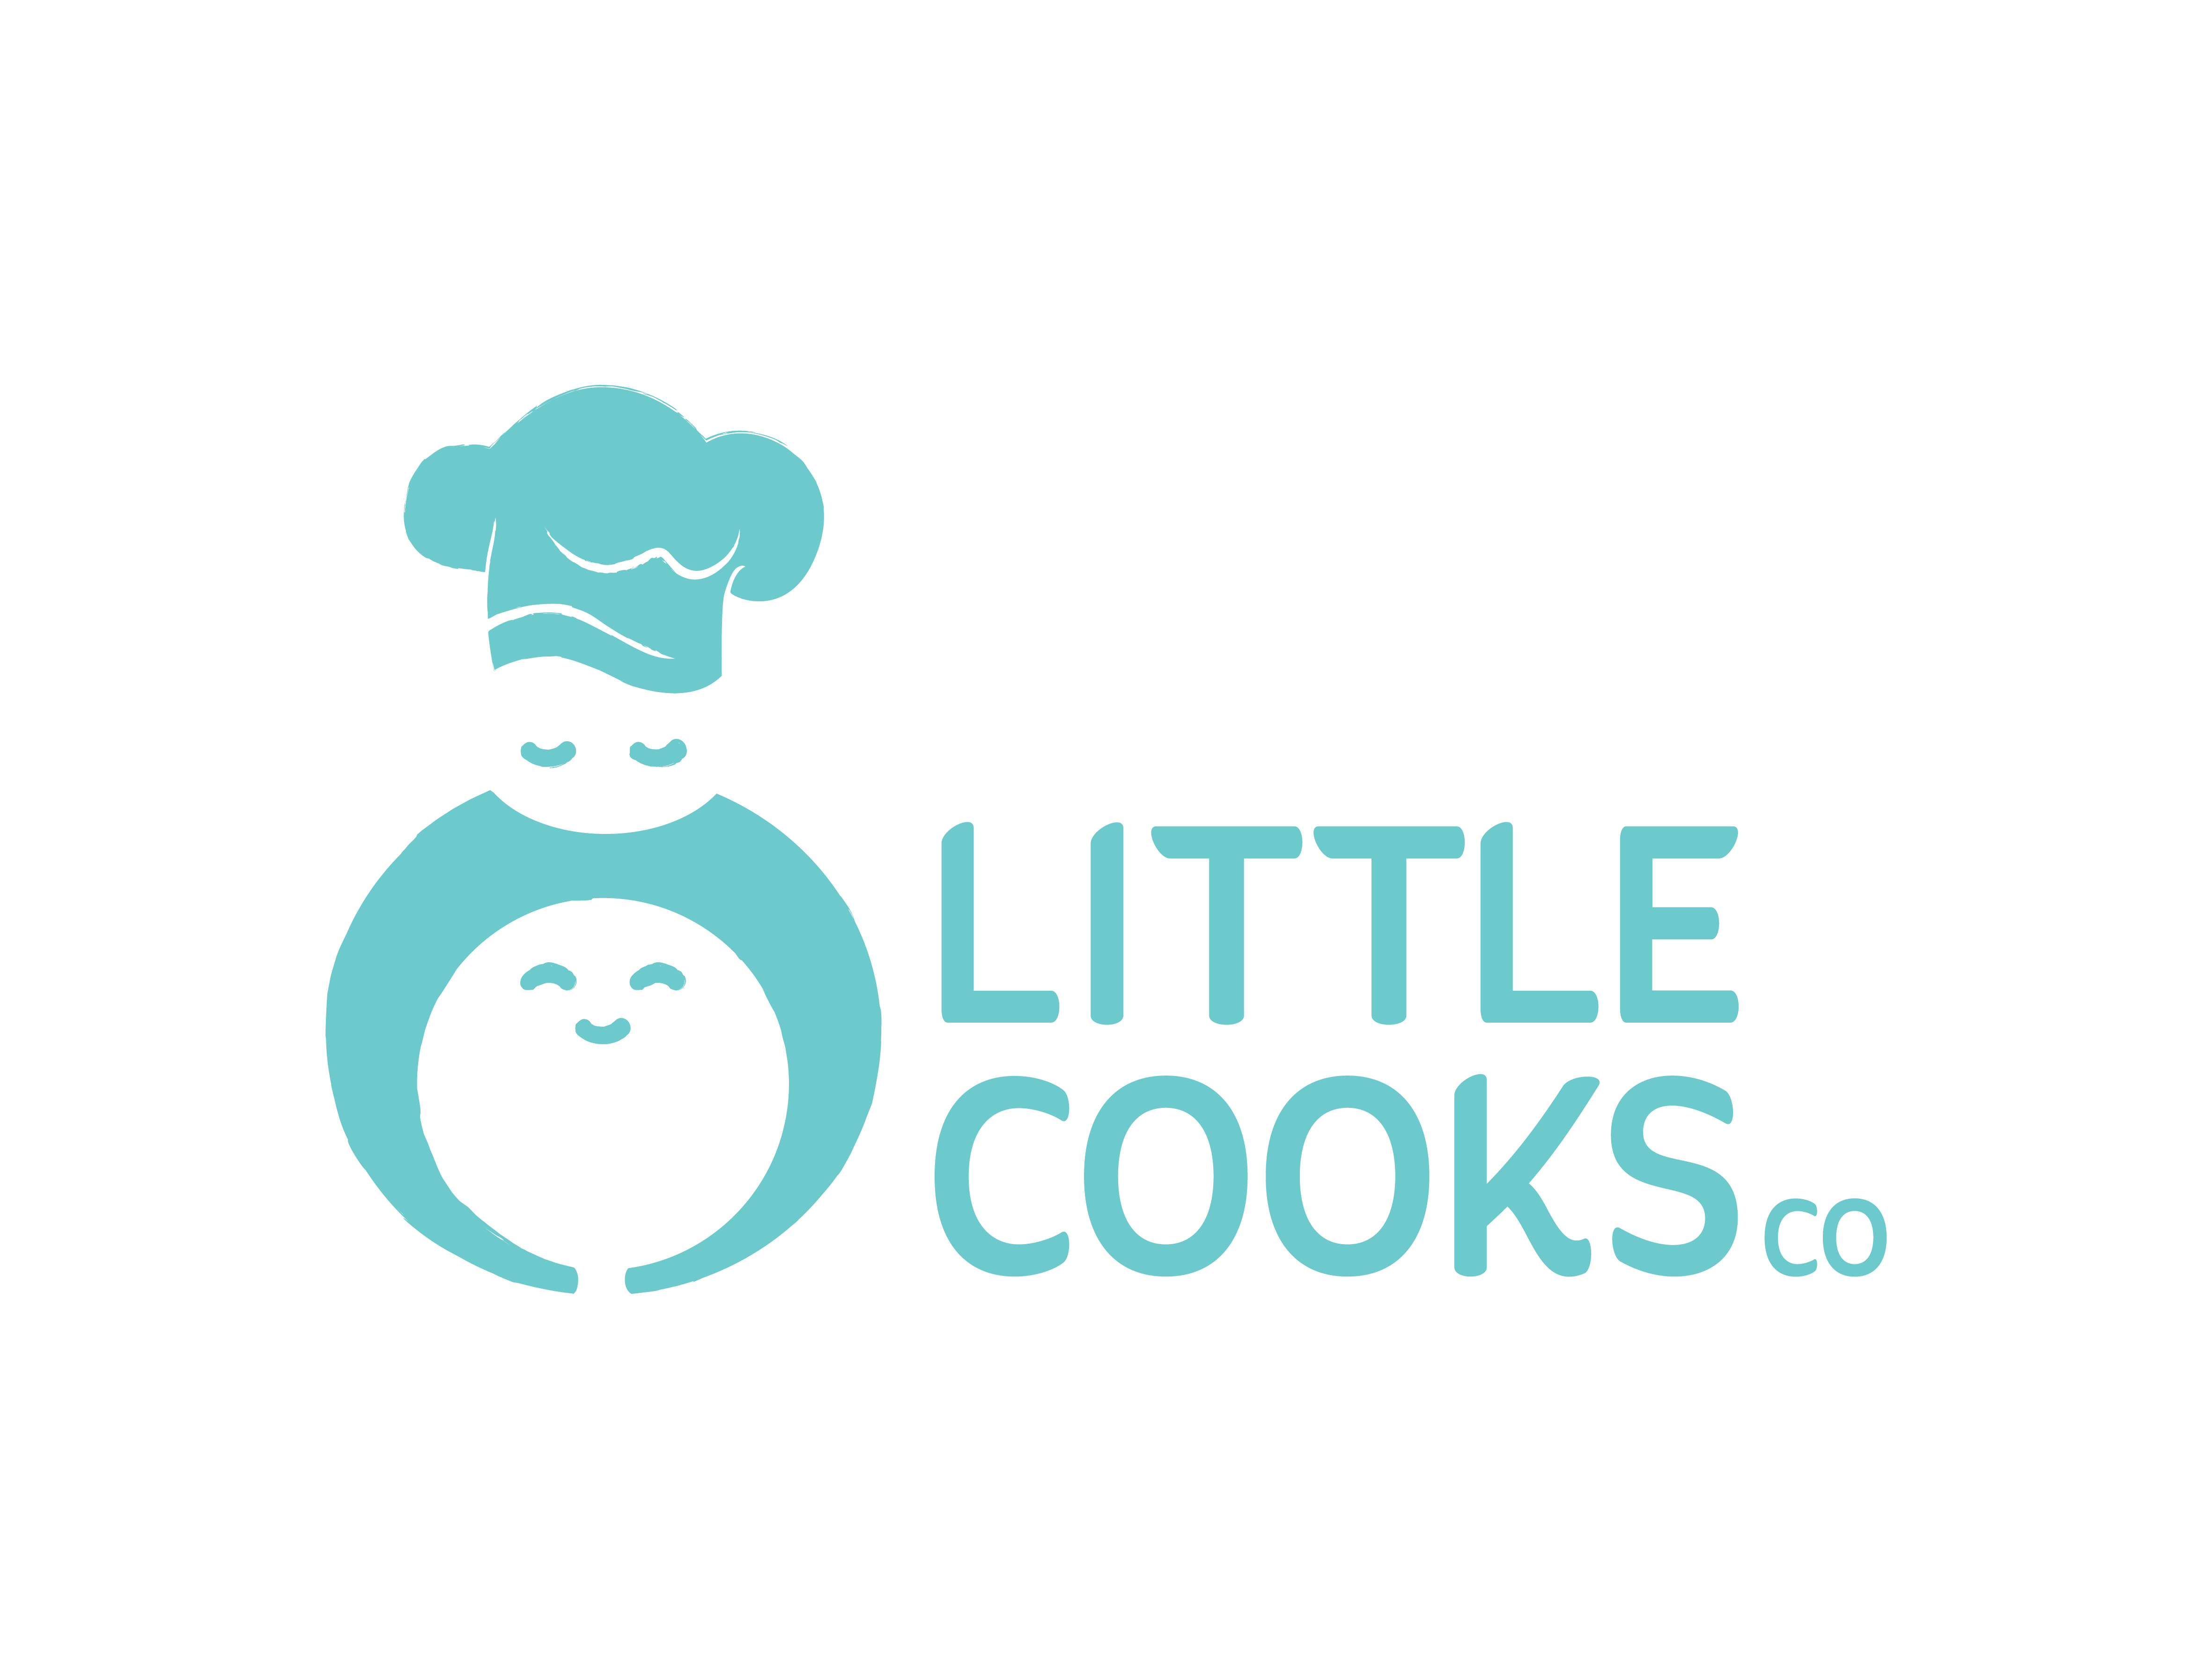 Little Cooks Co's logo